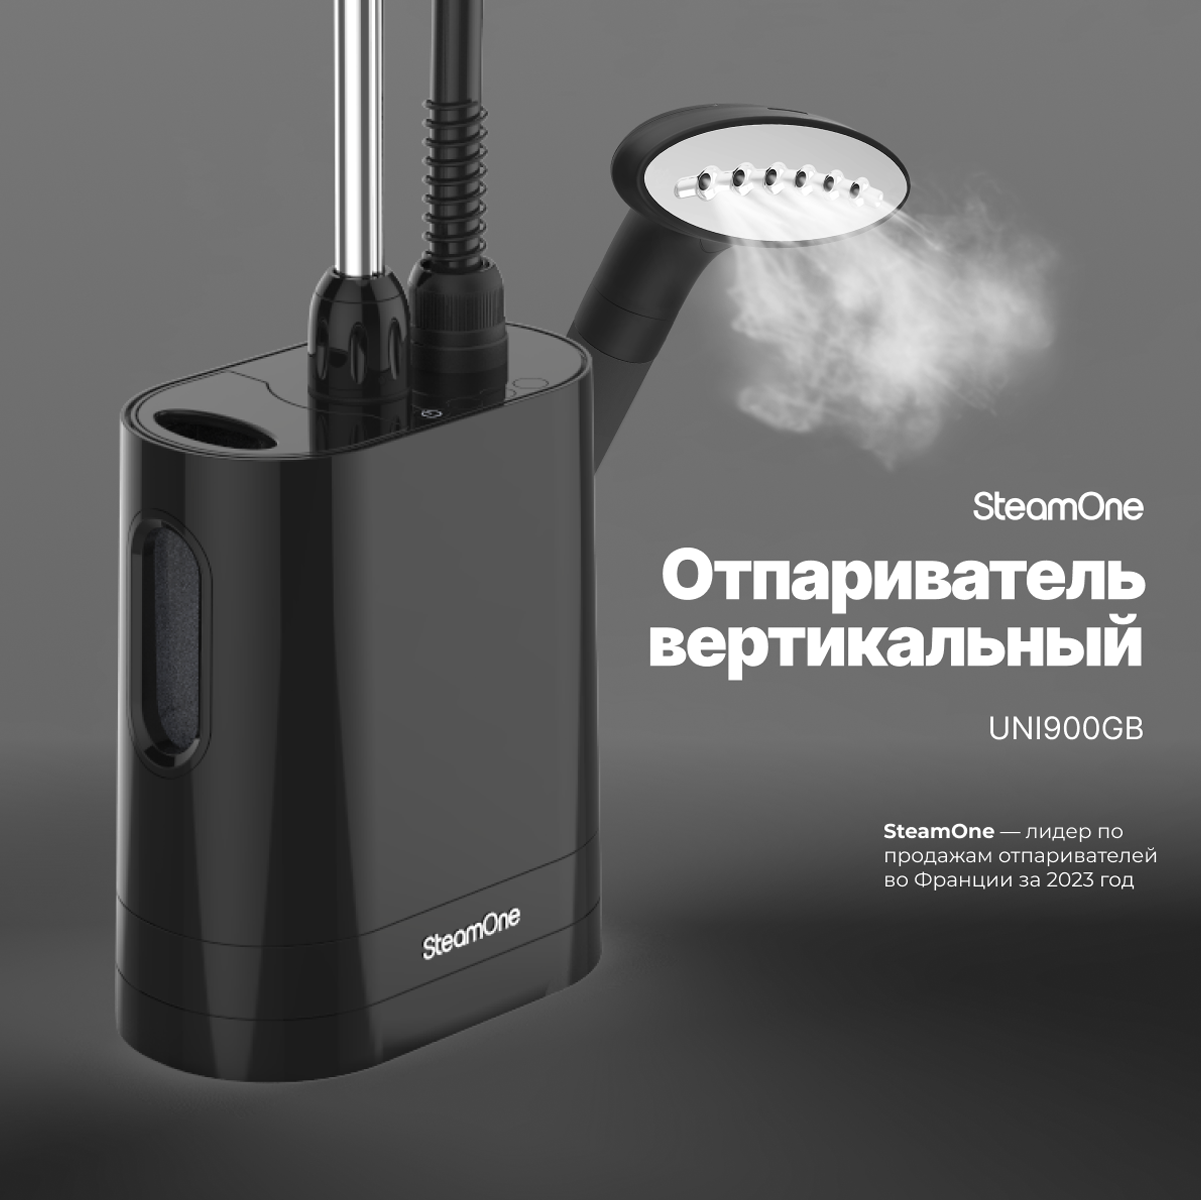 Вертикальный отпариватель SteamOne UNI900GB 1.2 л черный ручной отпариватель kitfort kt 929 2 черный коричневый